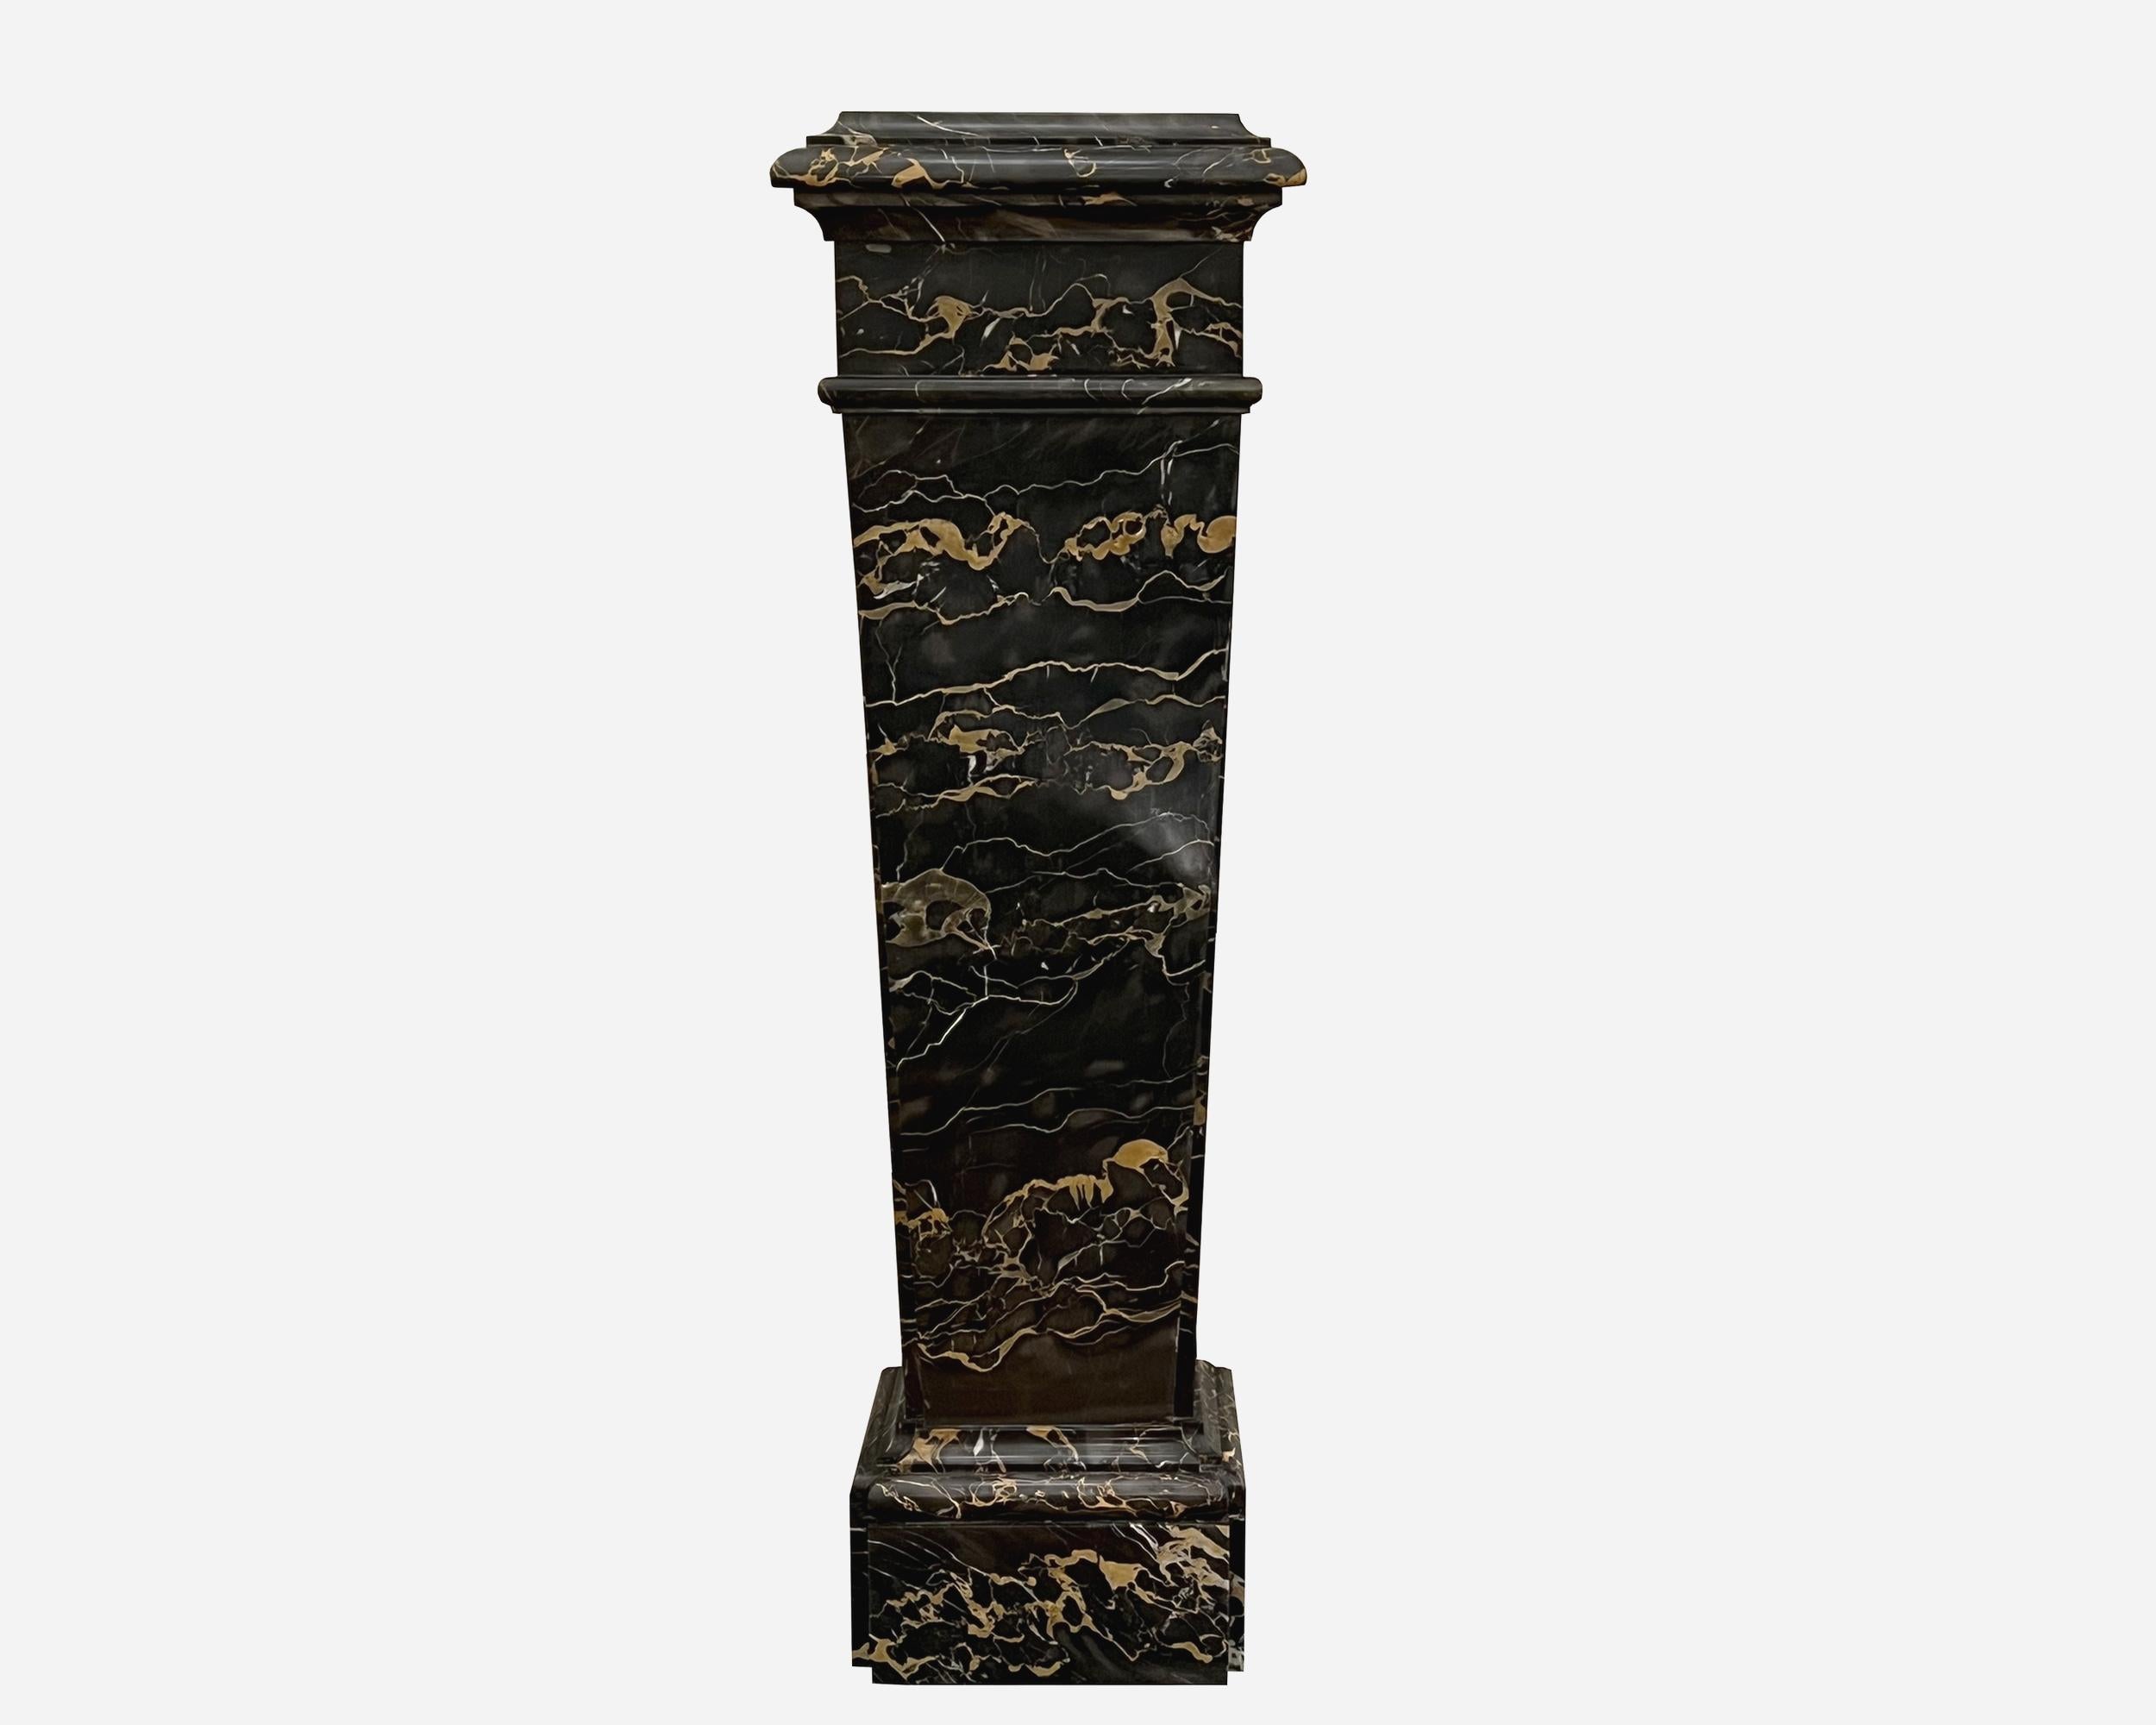 Portor-Marmorsockel im Directoire-Stil.

Portor-Marmor ist ein seltener und edler Marmor, der seit der Antike wegen seiner einzigartigen schwarzen Farbe mit tiefgelben Adern verwendet wird. Von König Ludwig XIV. für die Dekoration von Versailles